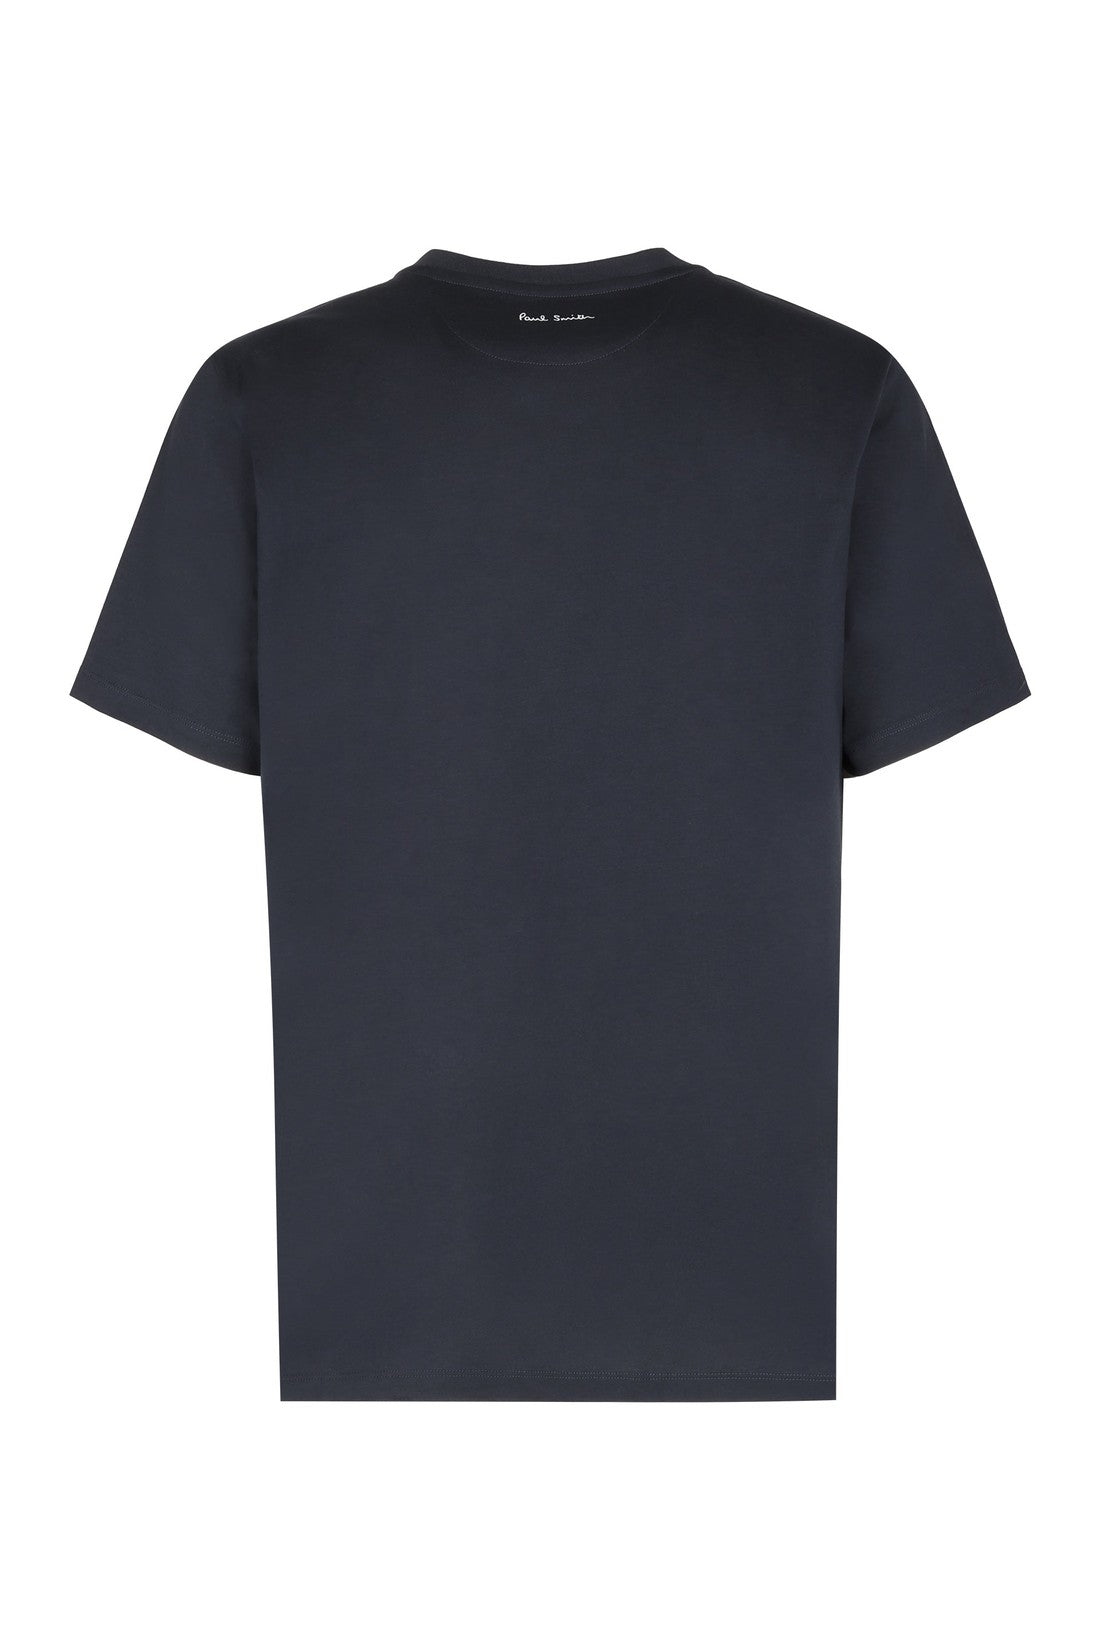 Paul Smith-OUTLET-SALE-Cotton T-shirt-ARCHIVIST